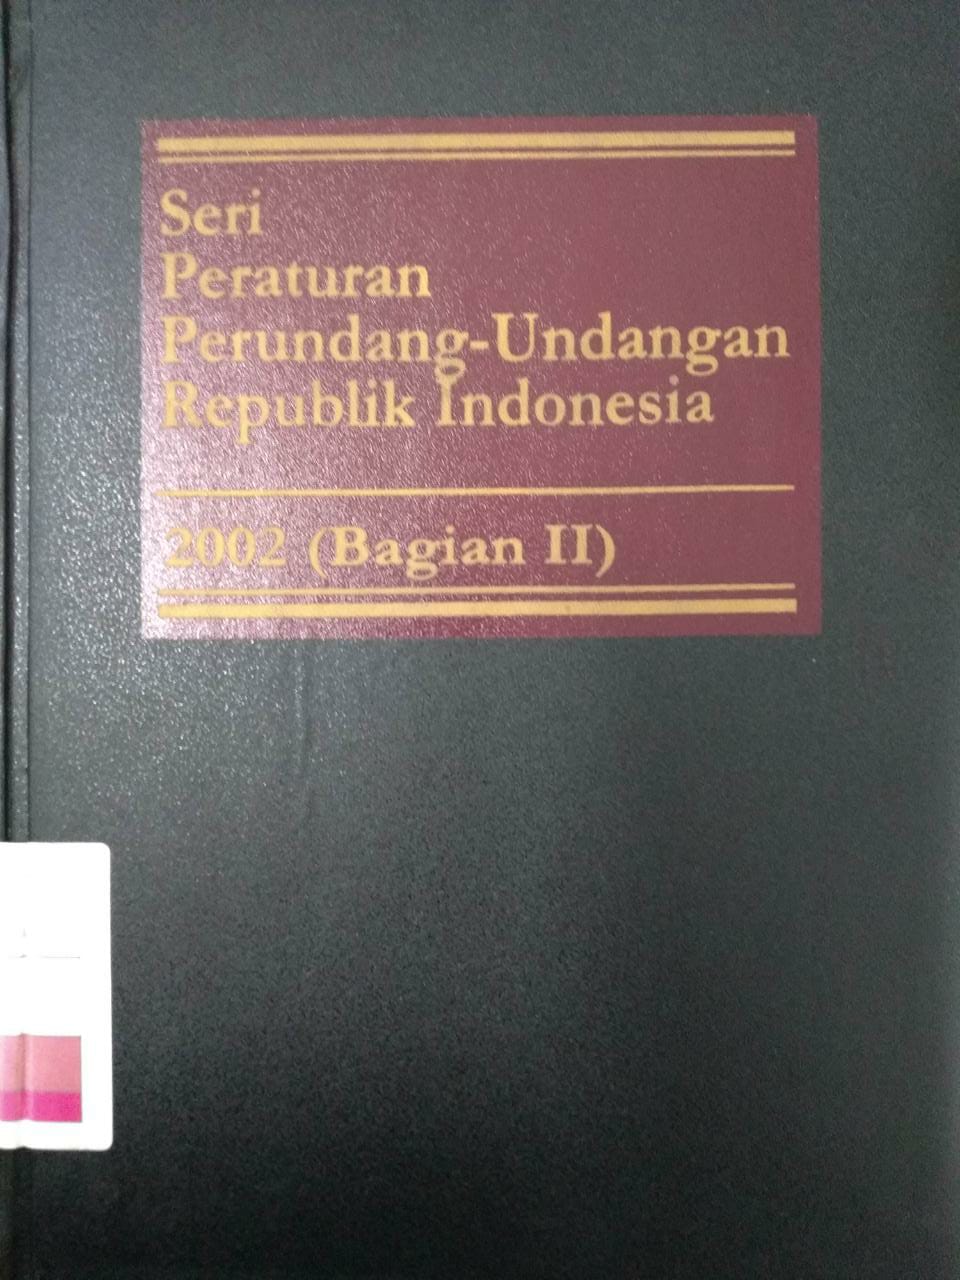 Seri Peraturan Perundang-undangan Republik Indonesia 2004 (Bagian II)